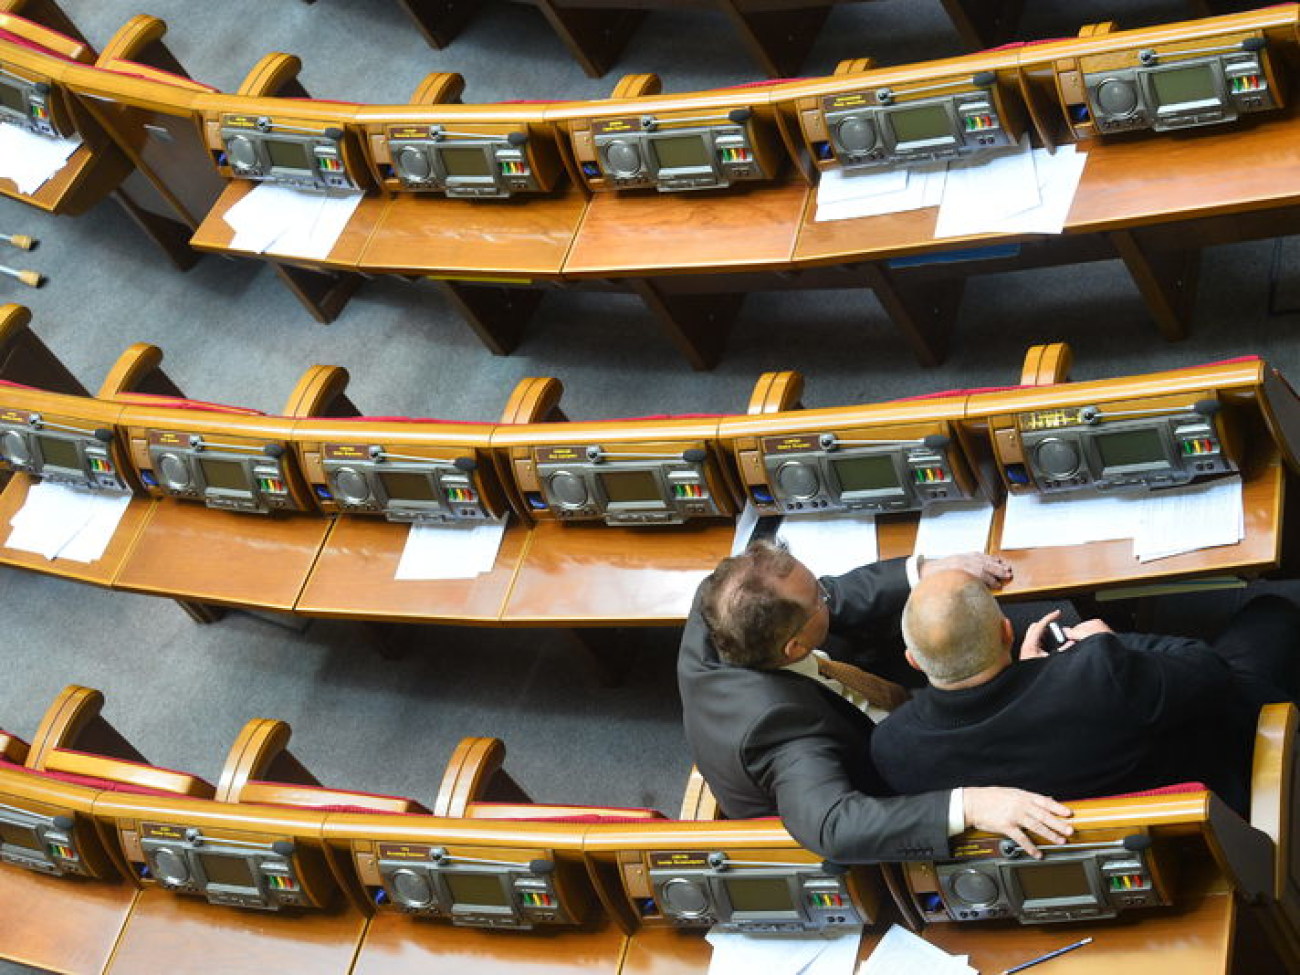 Внеочередное заседание ВР не удалось, депутаты не пришли, 20 октября 2014 г.